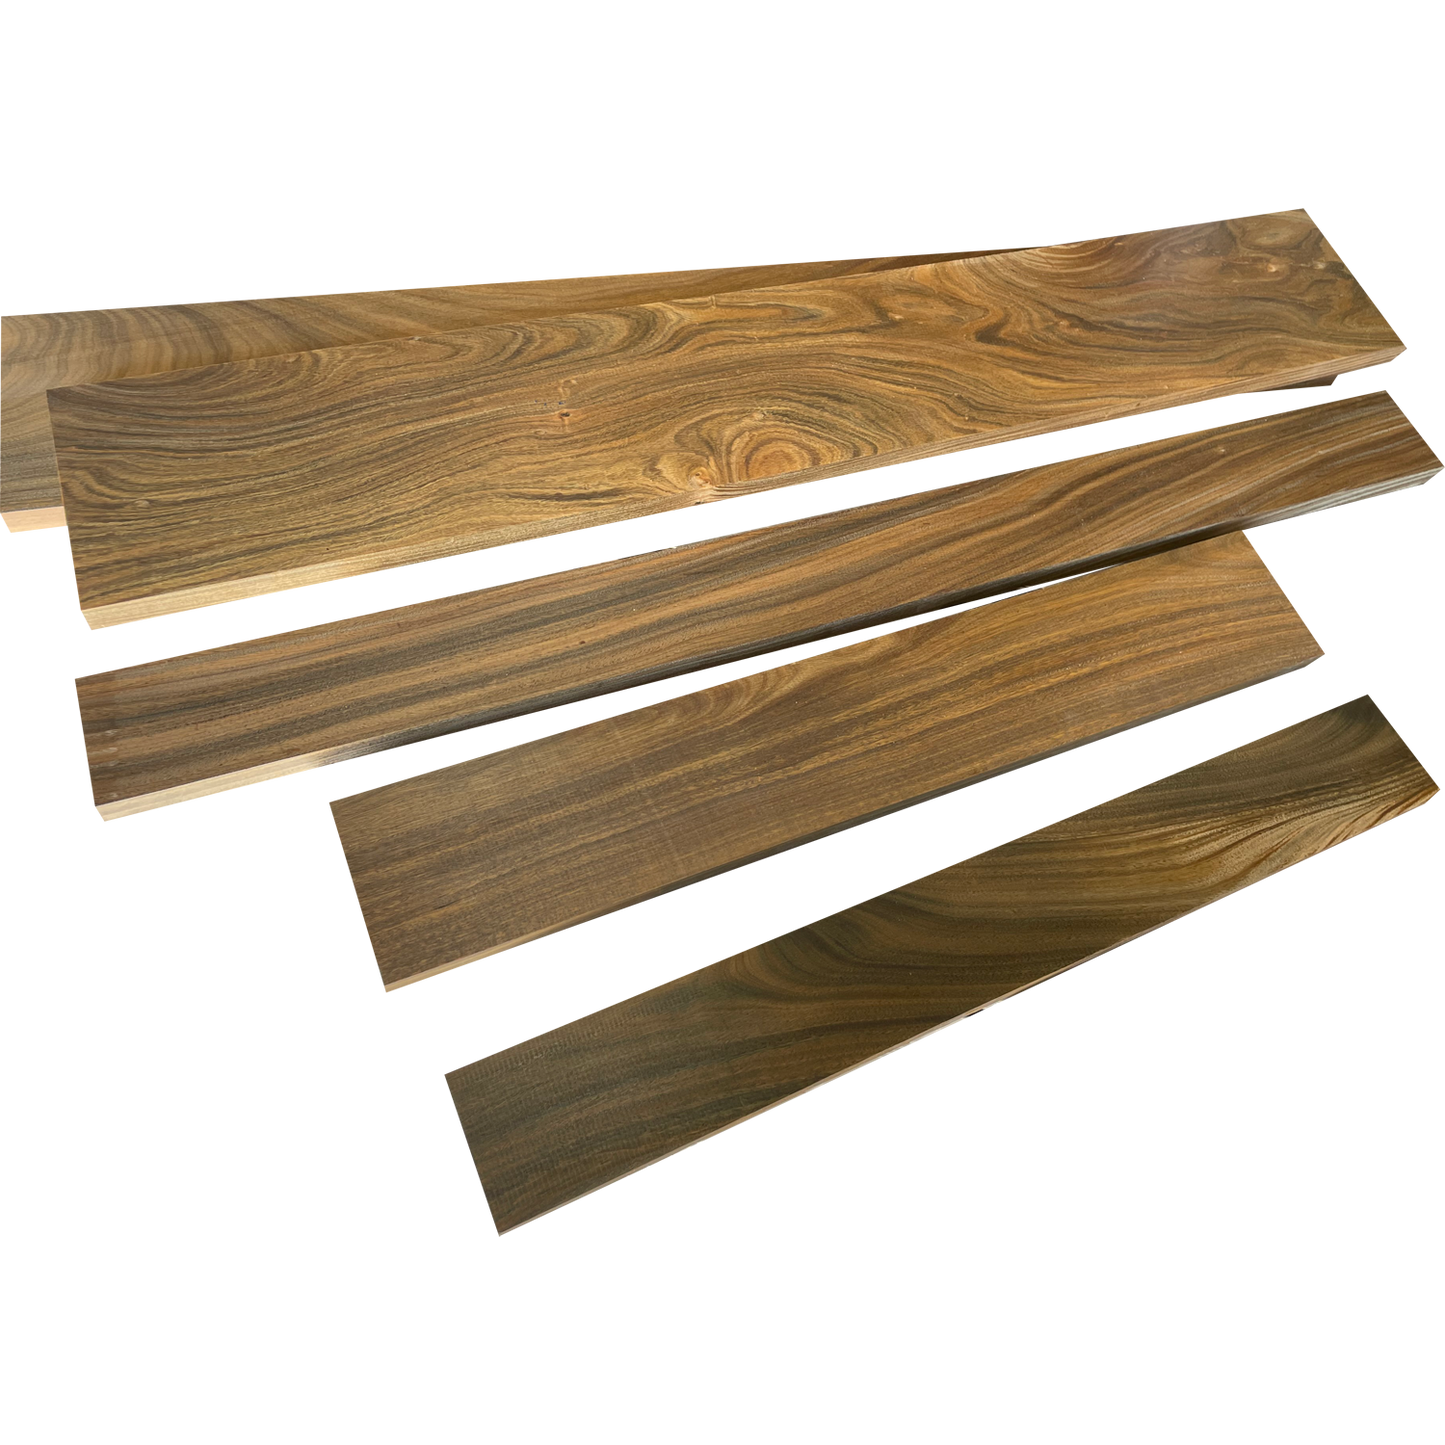 Verawood - Dimensional Lumber